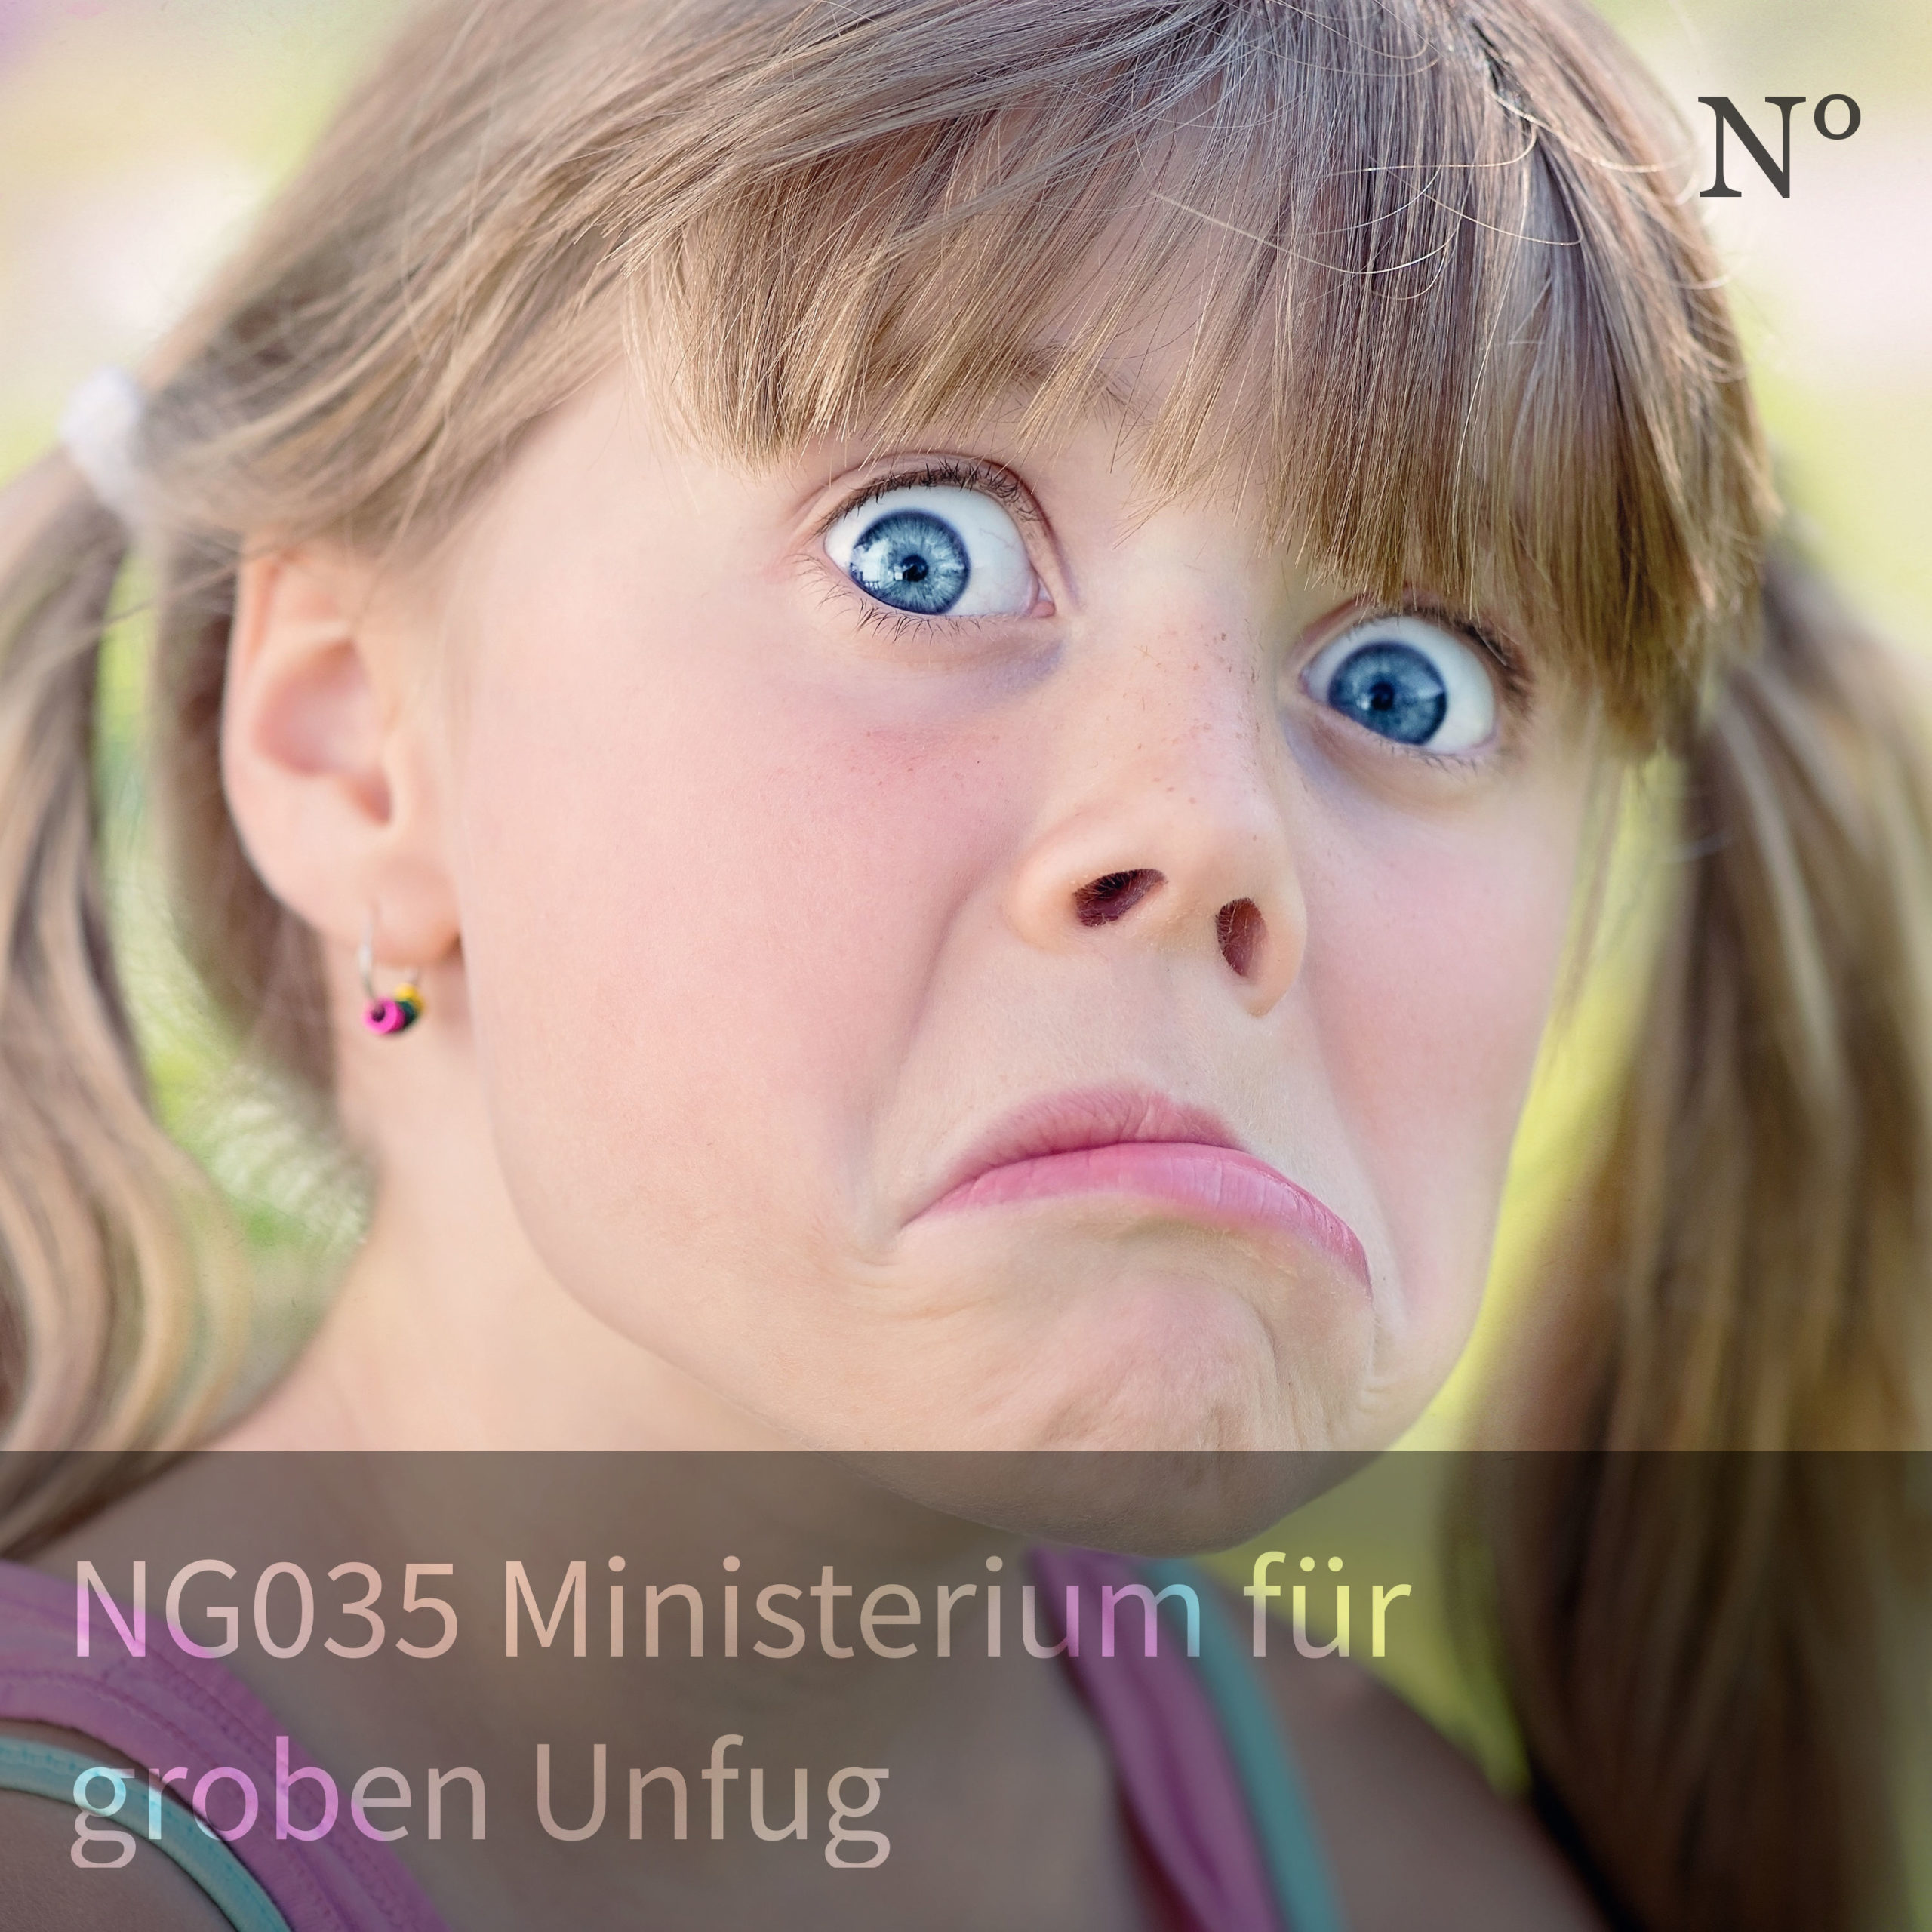 NG035 Ministerium für groben Unfug